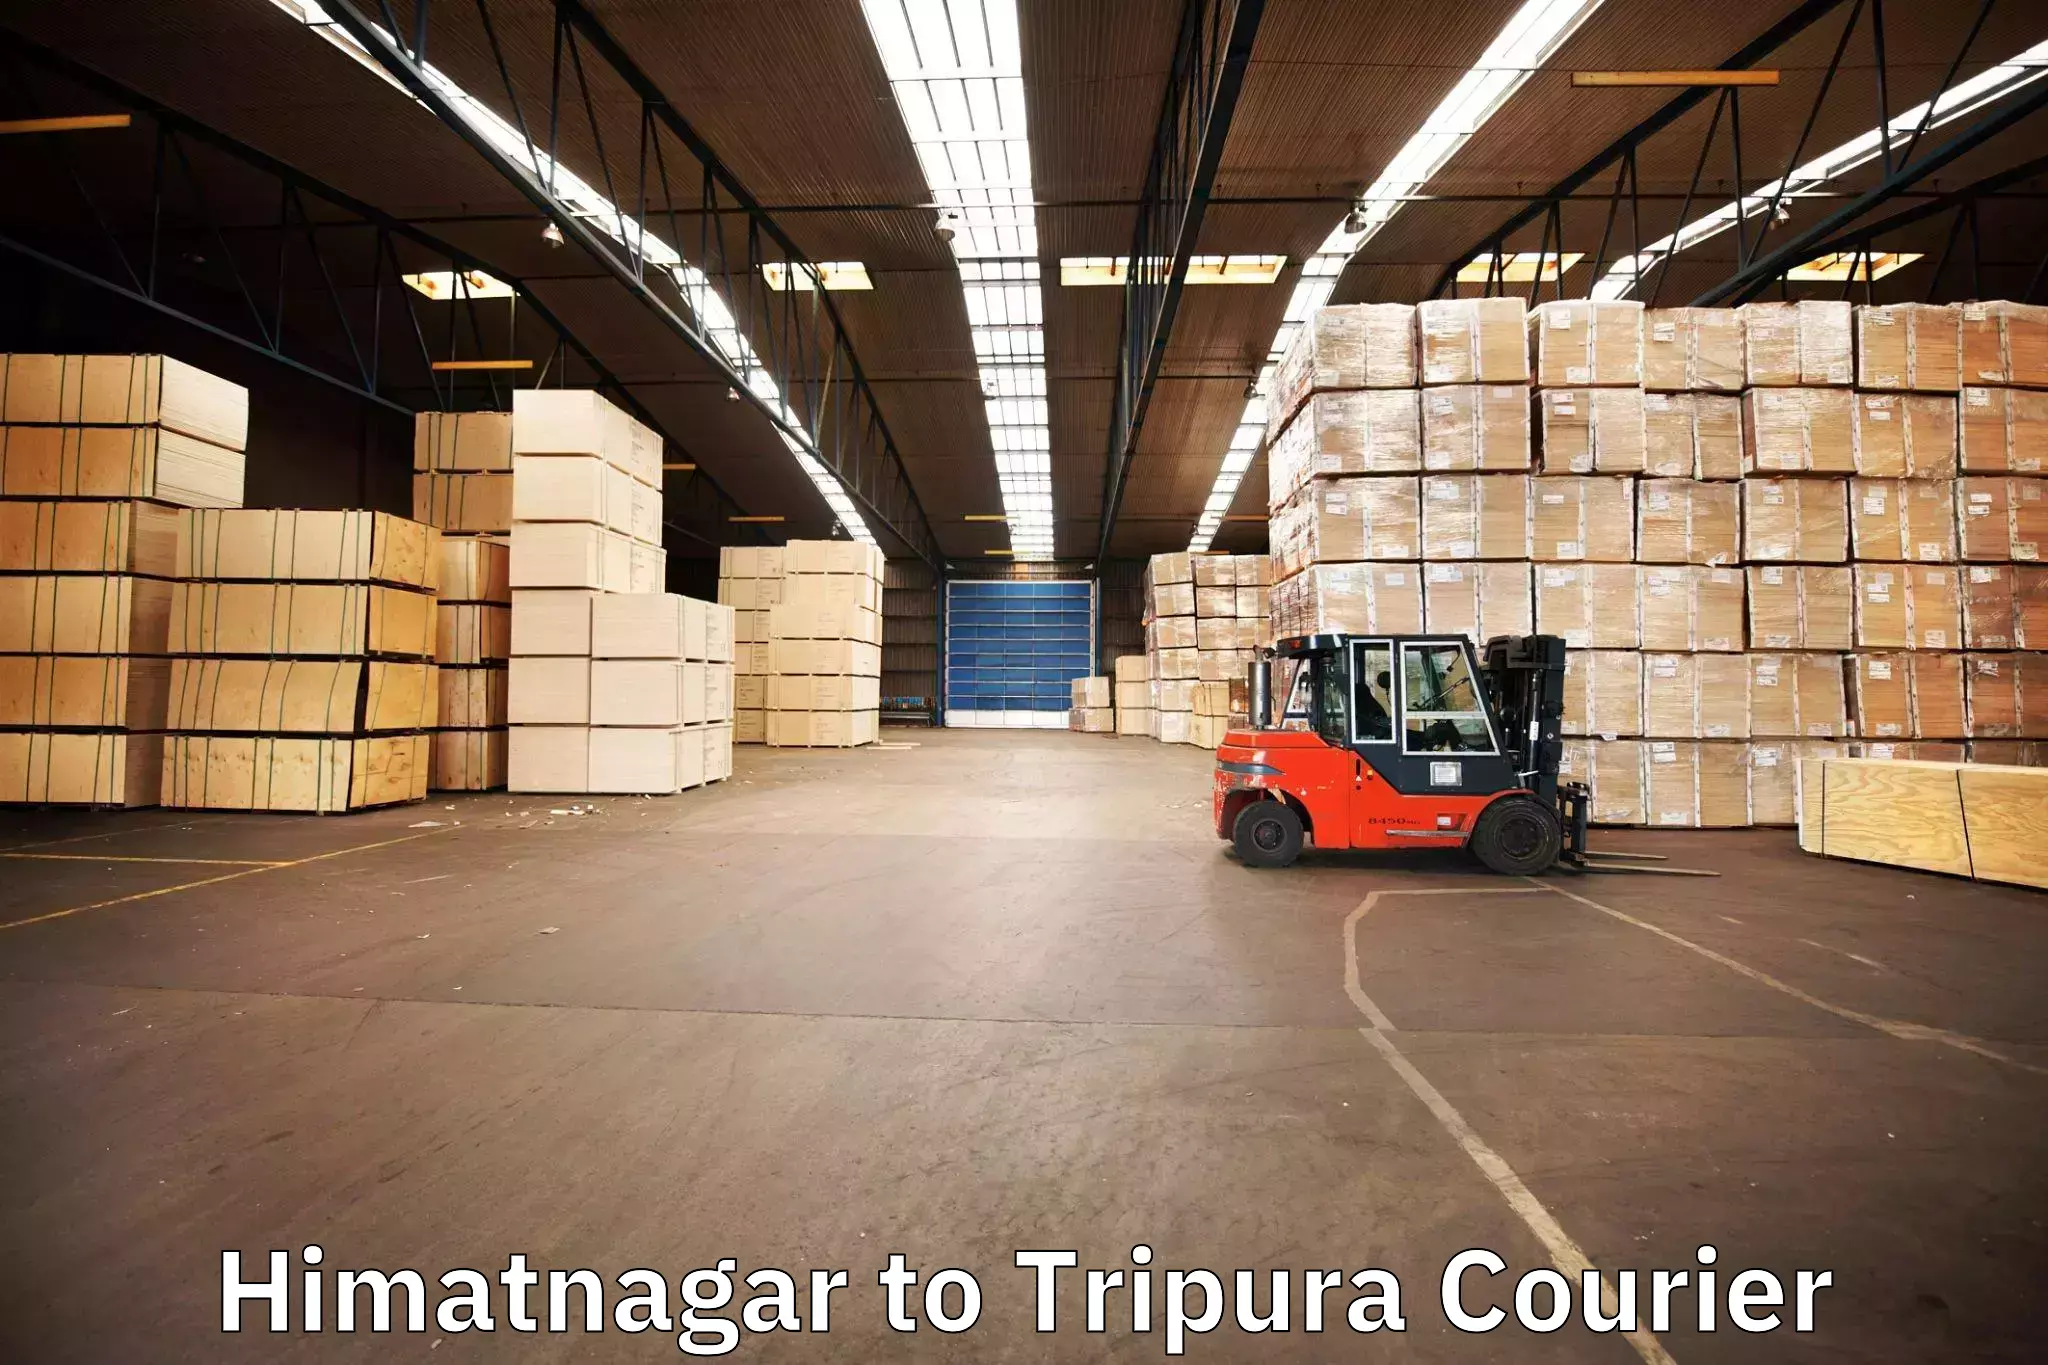 Seamless moving process Himatnagar to Amarpur